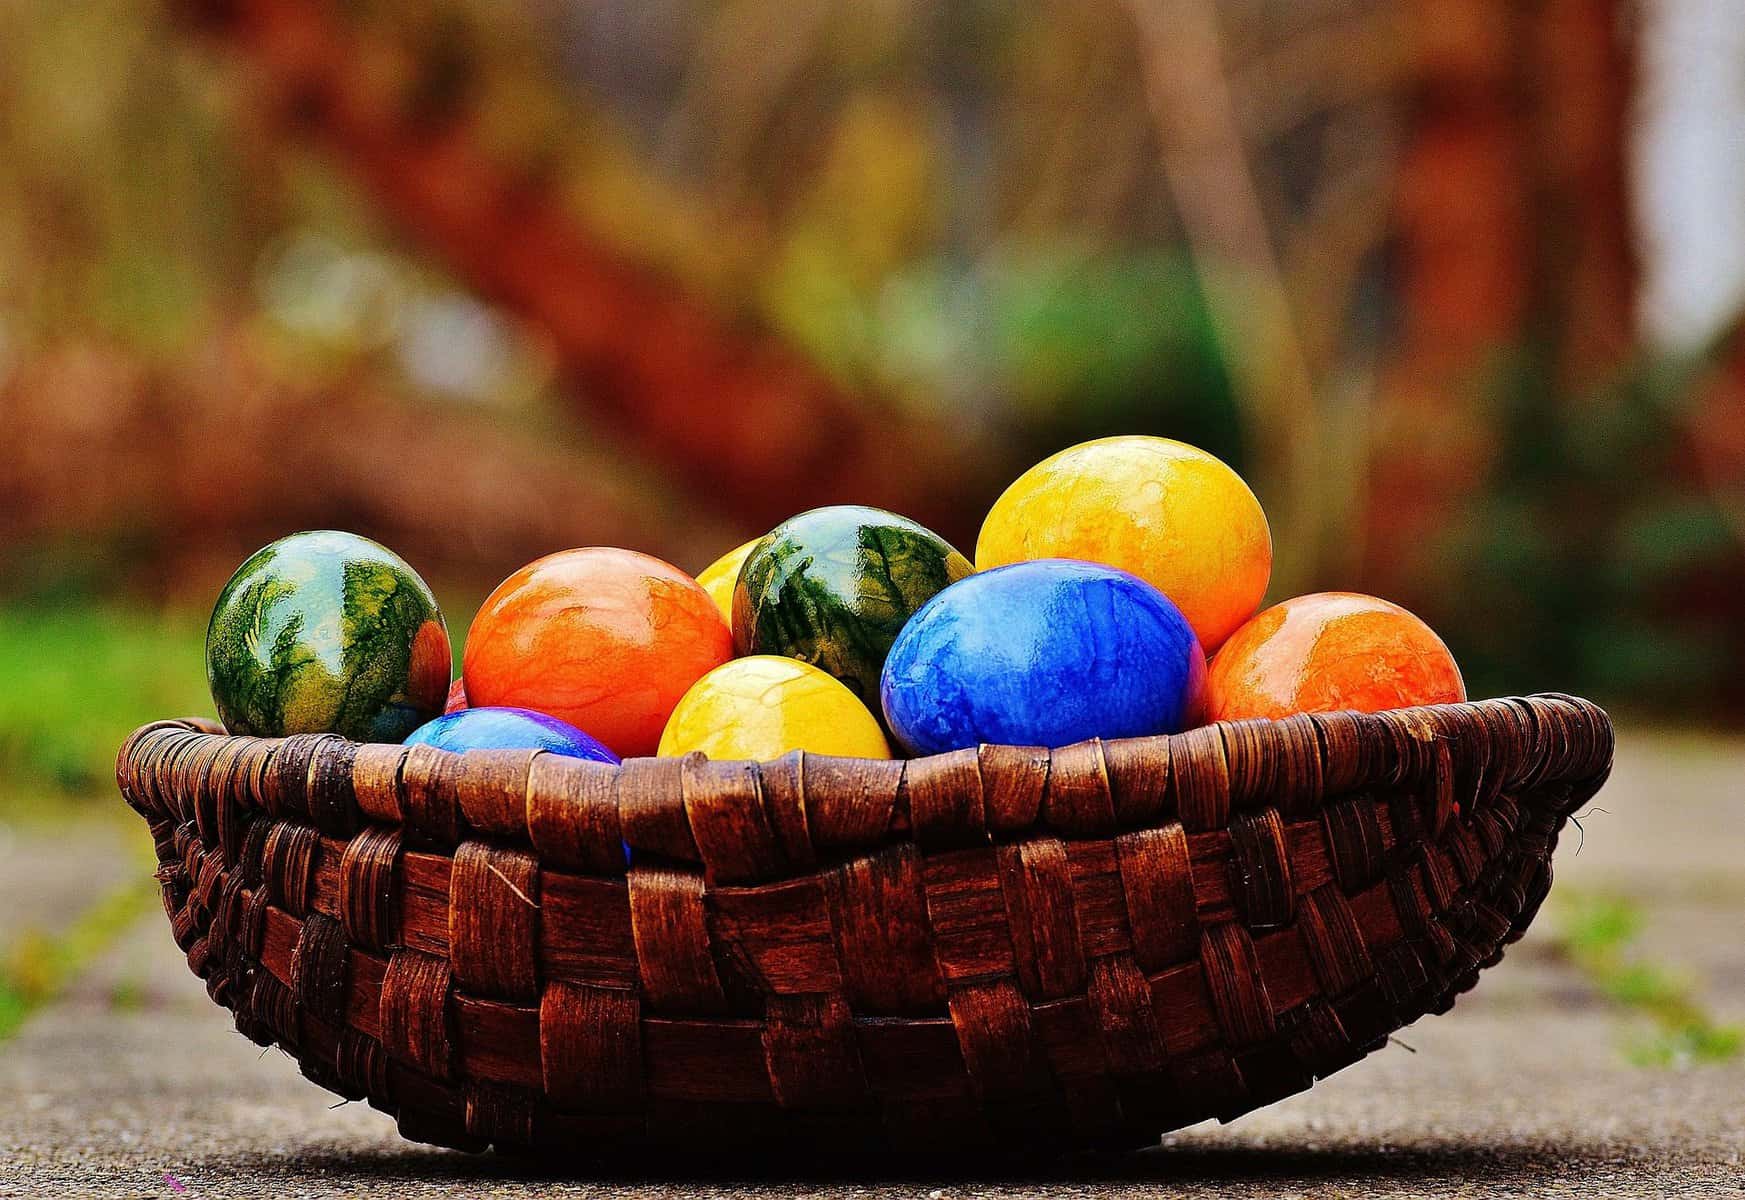 Řehtačka, barvení vajíček, pečení mazanců, vyšupání dívek pletenou pomlázkou. To vše jsou oblíbené velikonoční zvyky a tradice, ale také s vítáním jara se konají jarmarky, trhy, výstavy, dílničky, kde se […]